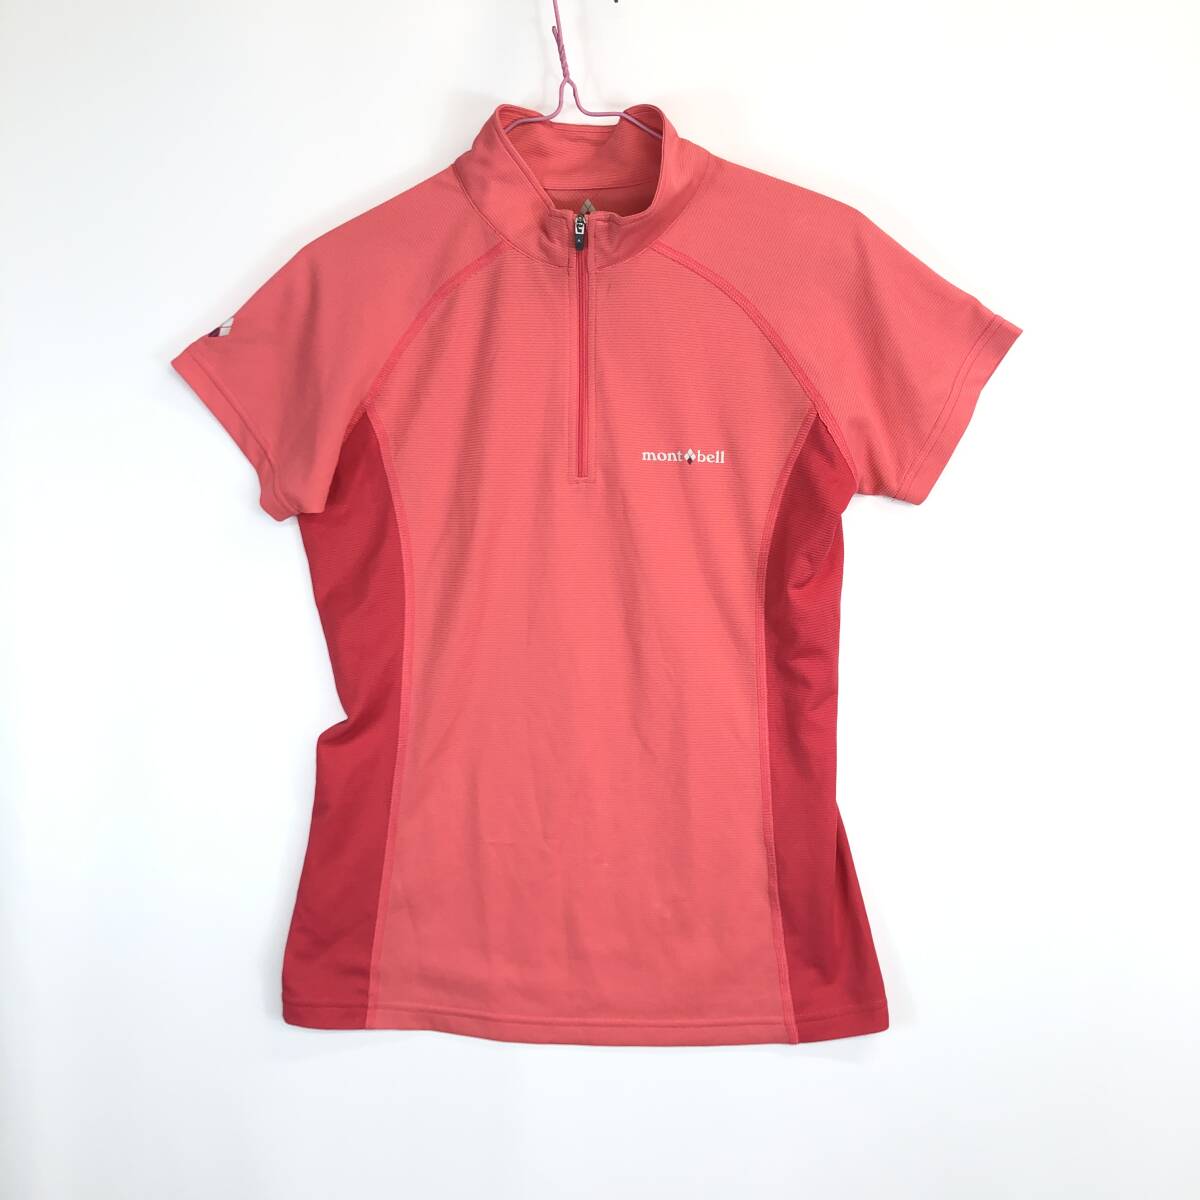 モンベル mont-bell 1104929 半袖プルオーバーシャツ クール ハーフスリーブジップシャツ レディース Mサイズ ピンク系_画像1